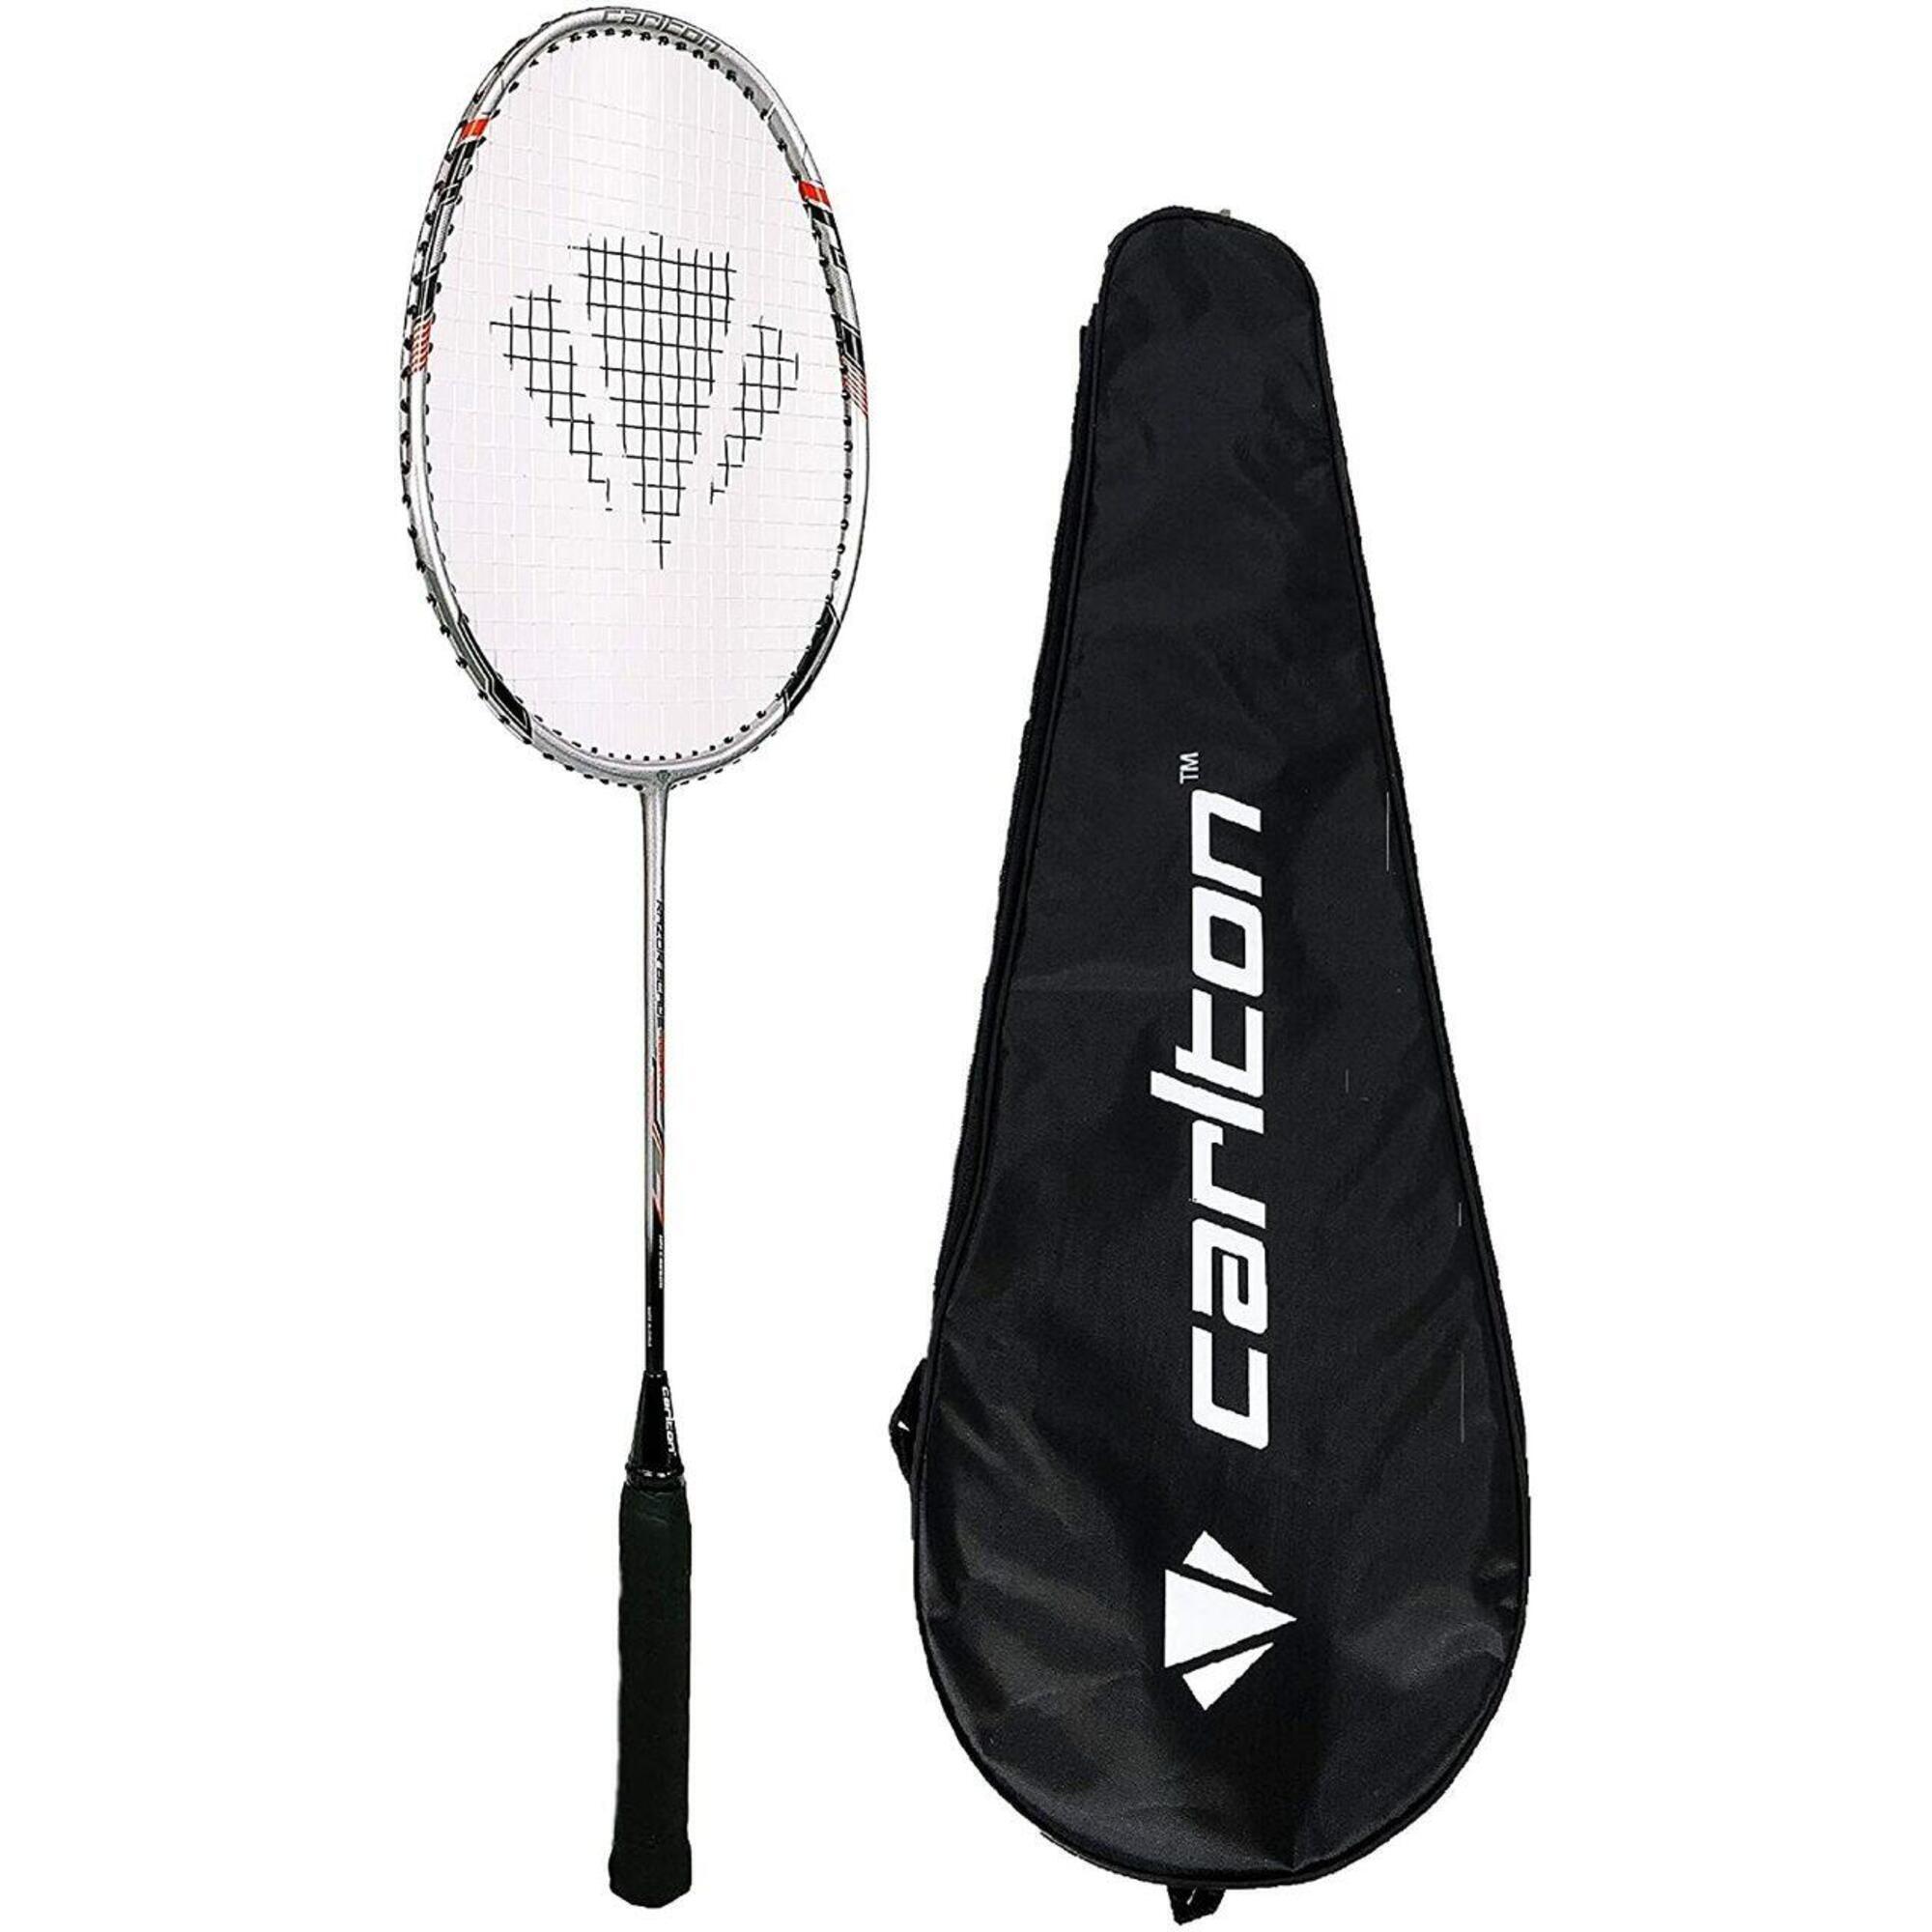 CARLTON Carlton Razorblade Tour Badminton Racket & Cover